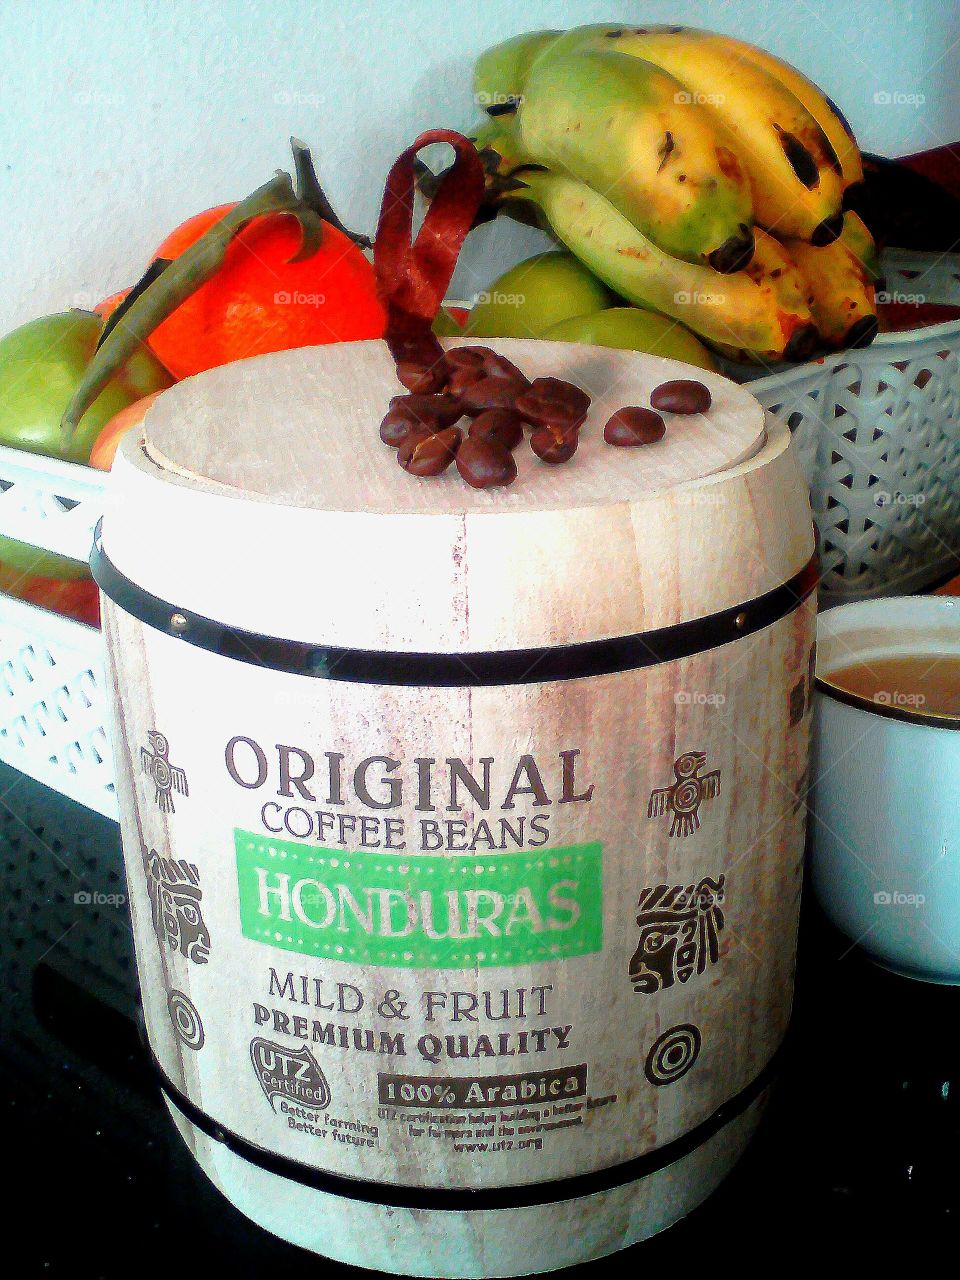 Honduras Coffee experience